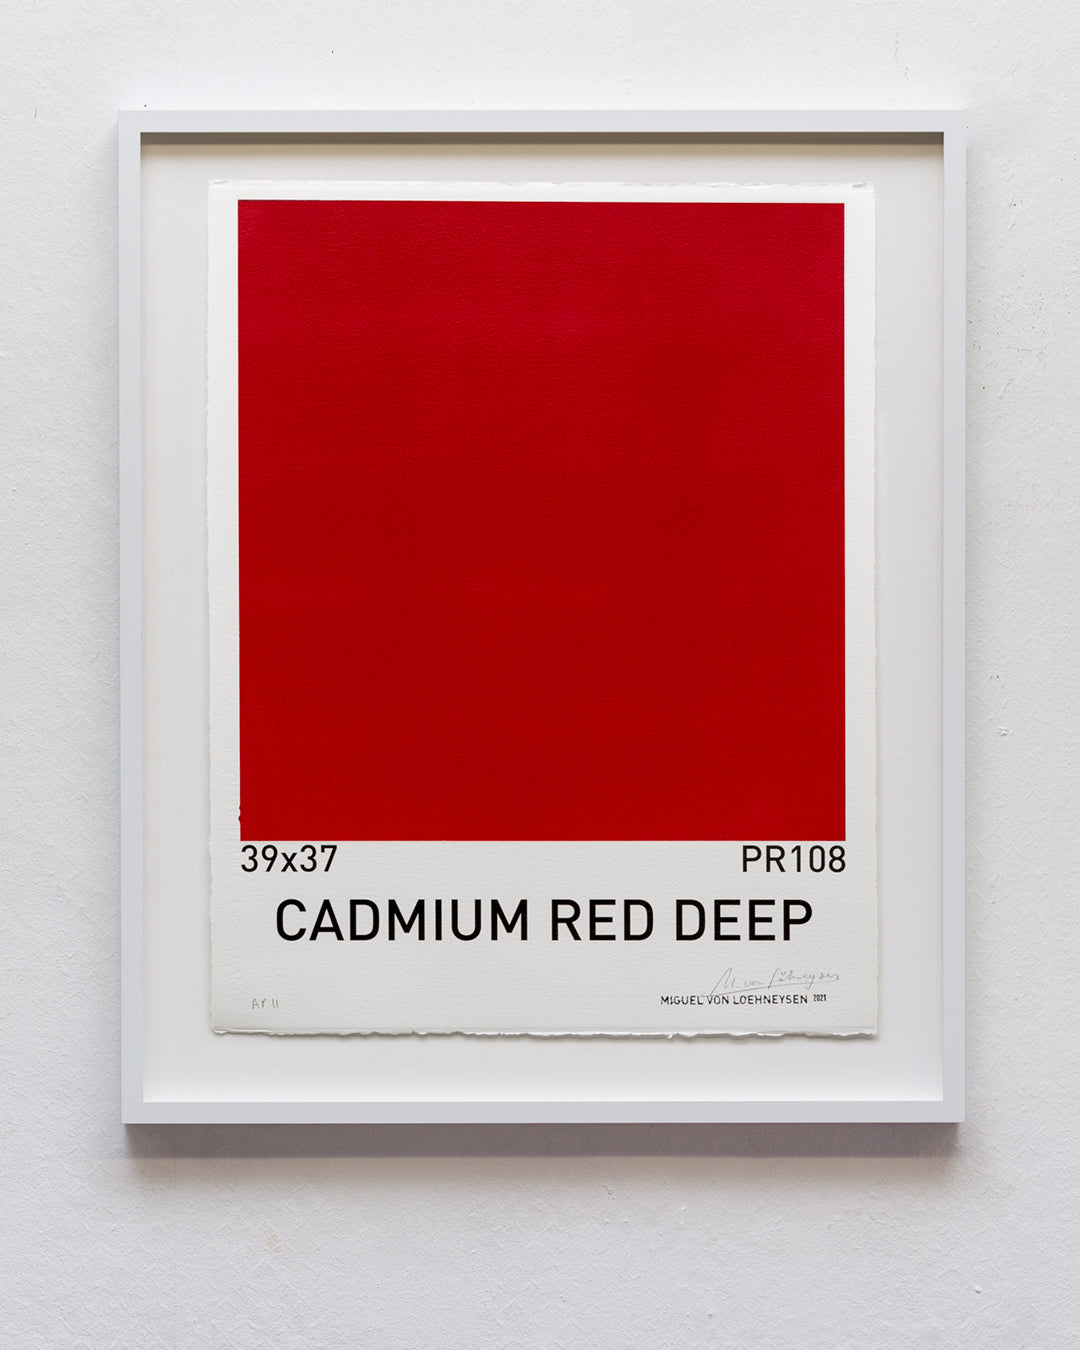 Cadmium Red Deep (39x37/PR108)